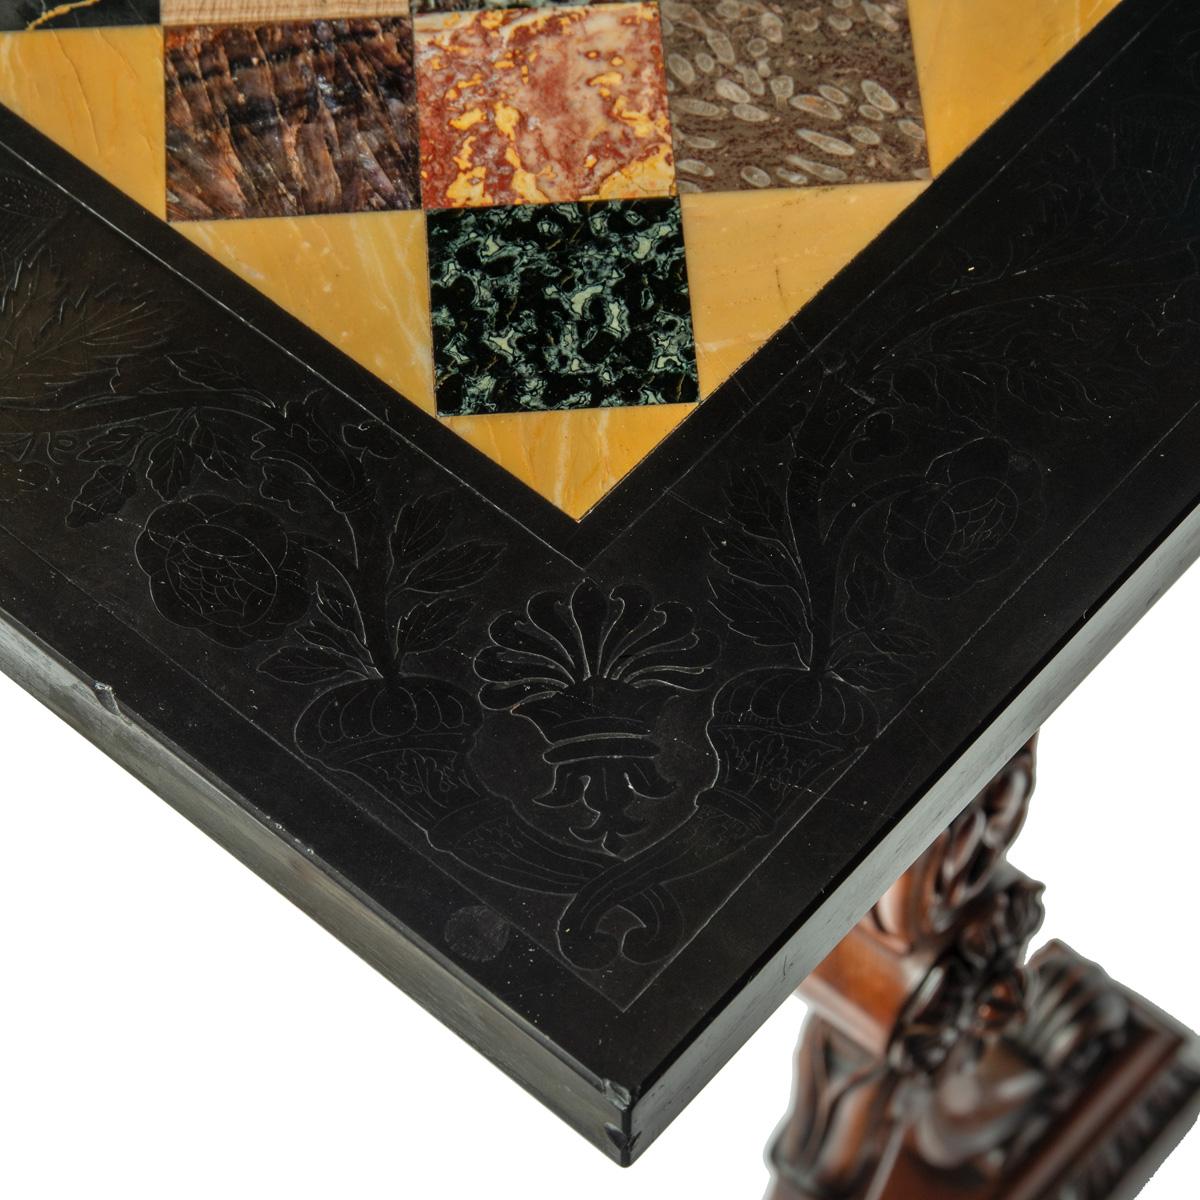 Derbyshire black marble end support specimen table